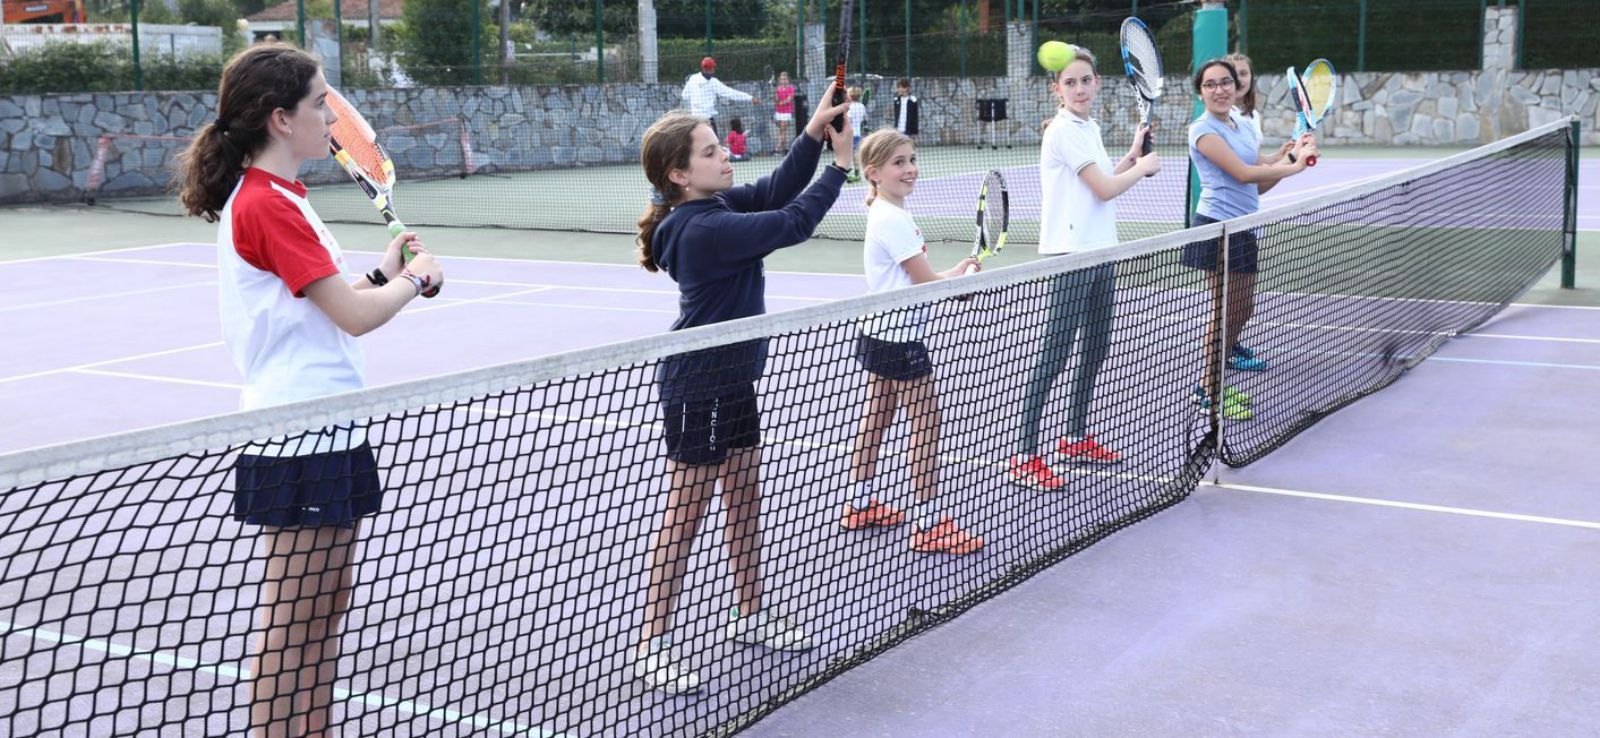 Por la izquierda, Cecilia Izquierdo, Carmen Fernández, María Rodríguez, África Álvarez y Rosita Cuetos, entrenando ayer en el Club de Tenis. | Juan Plaza